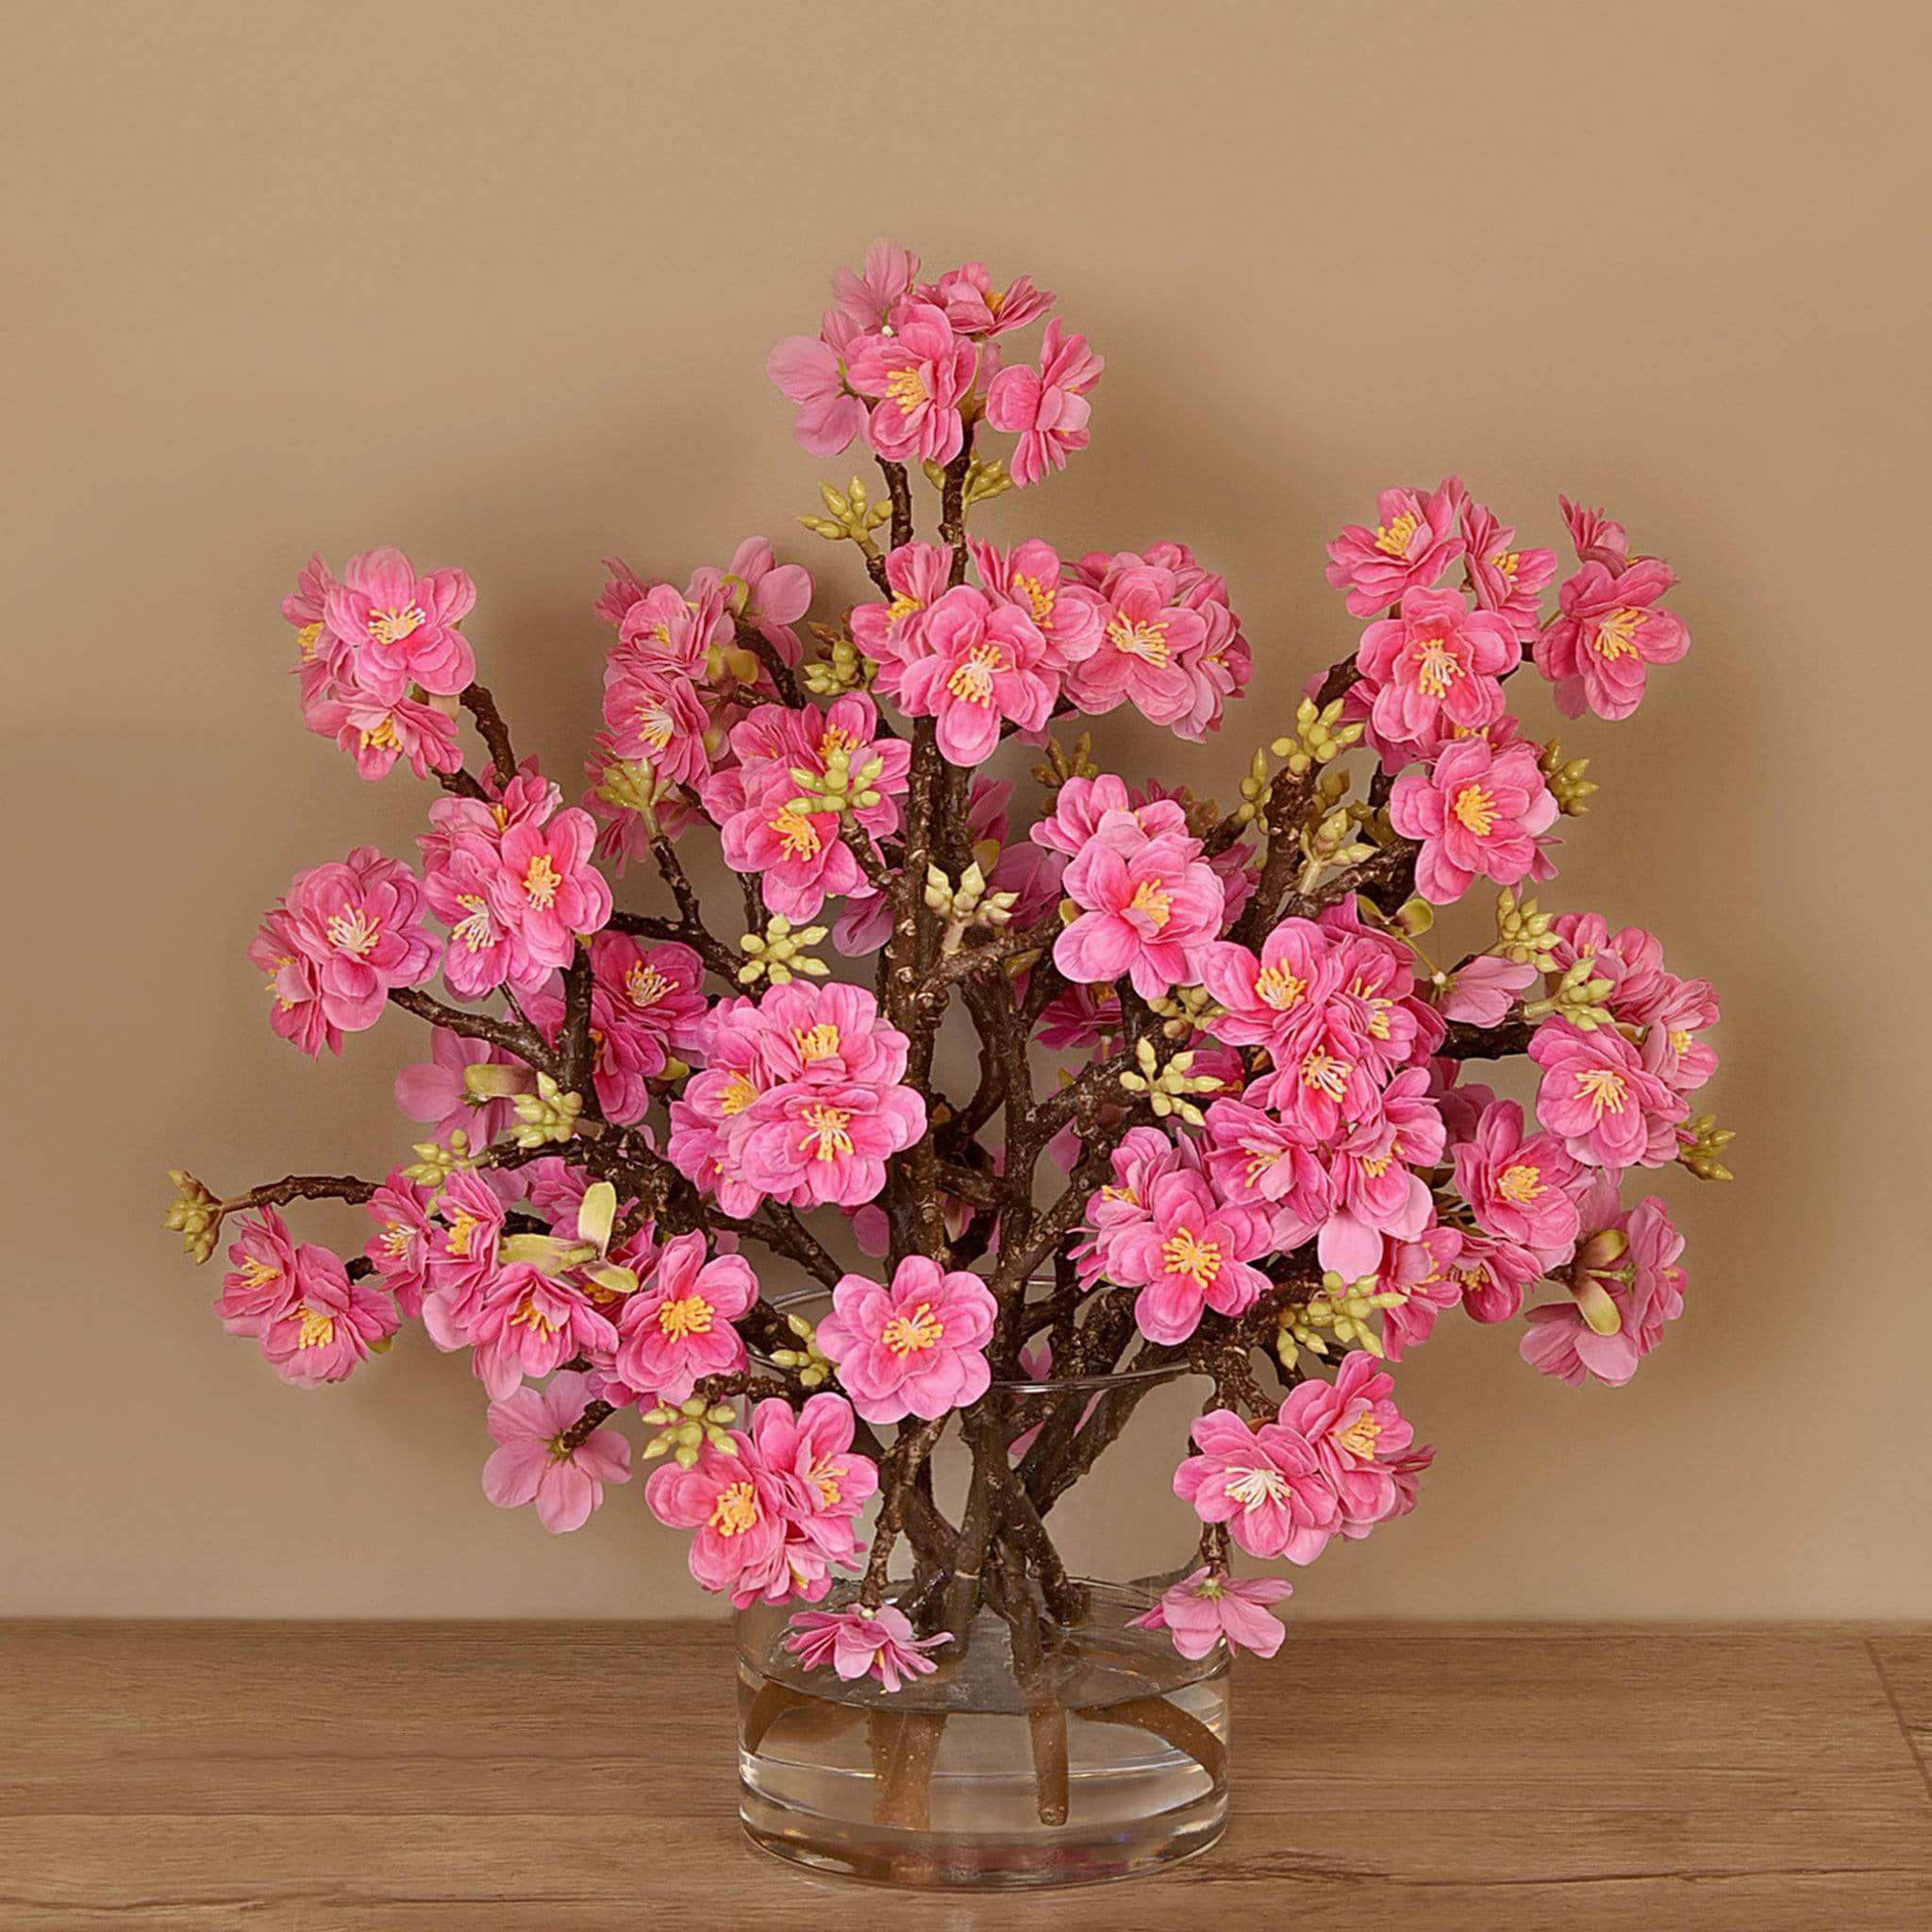 Artificial Blossom Arrangement in Glass Vase - Bloomr